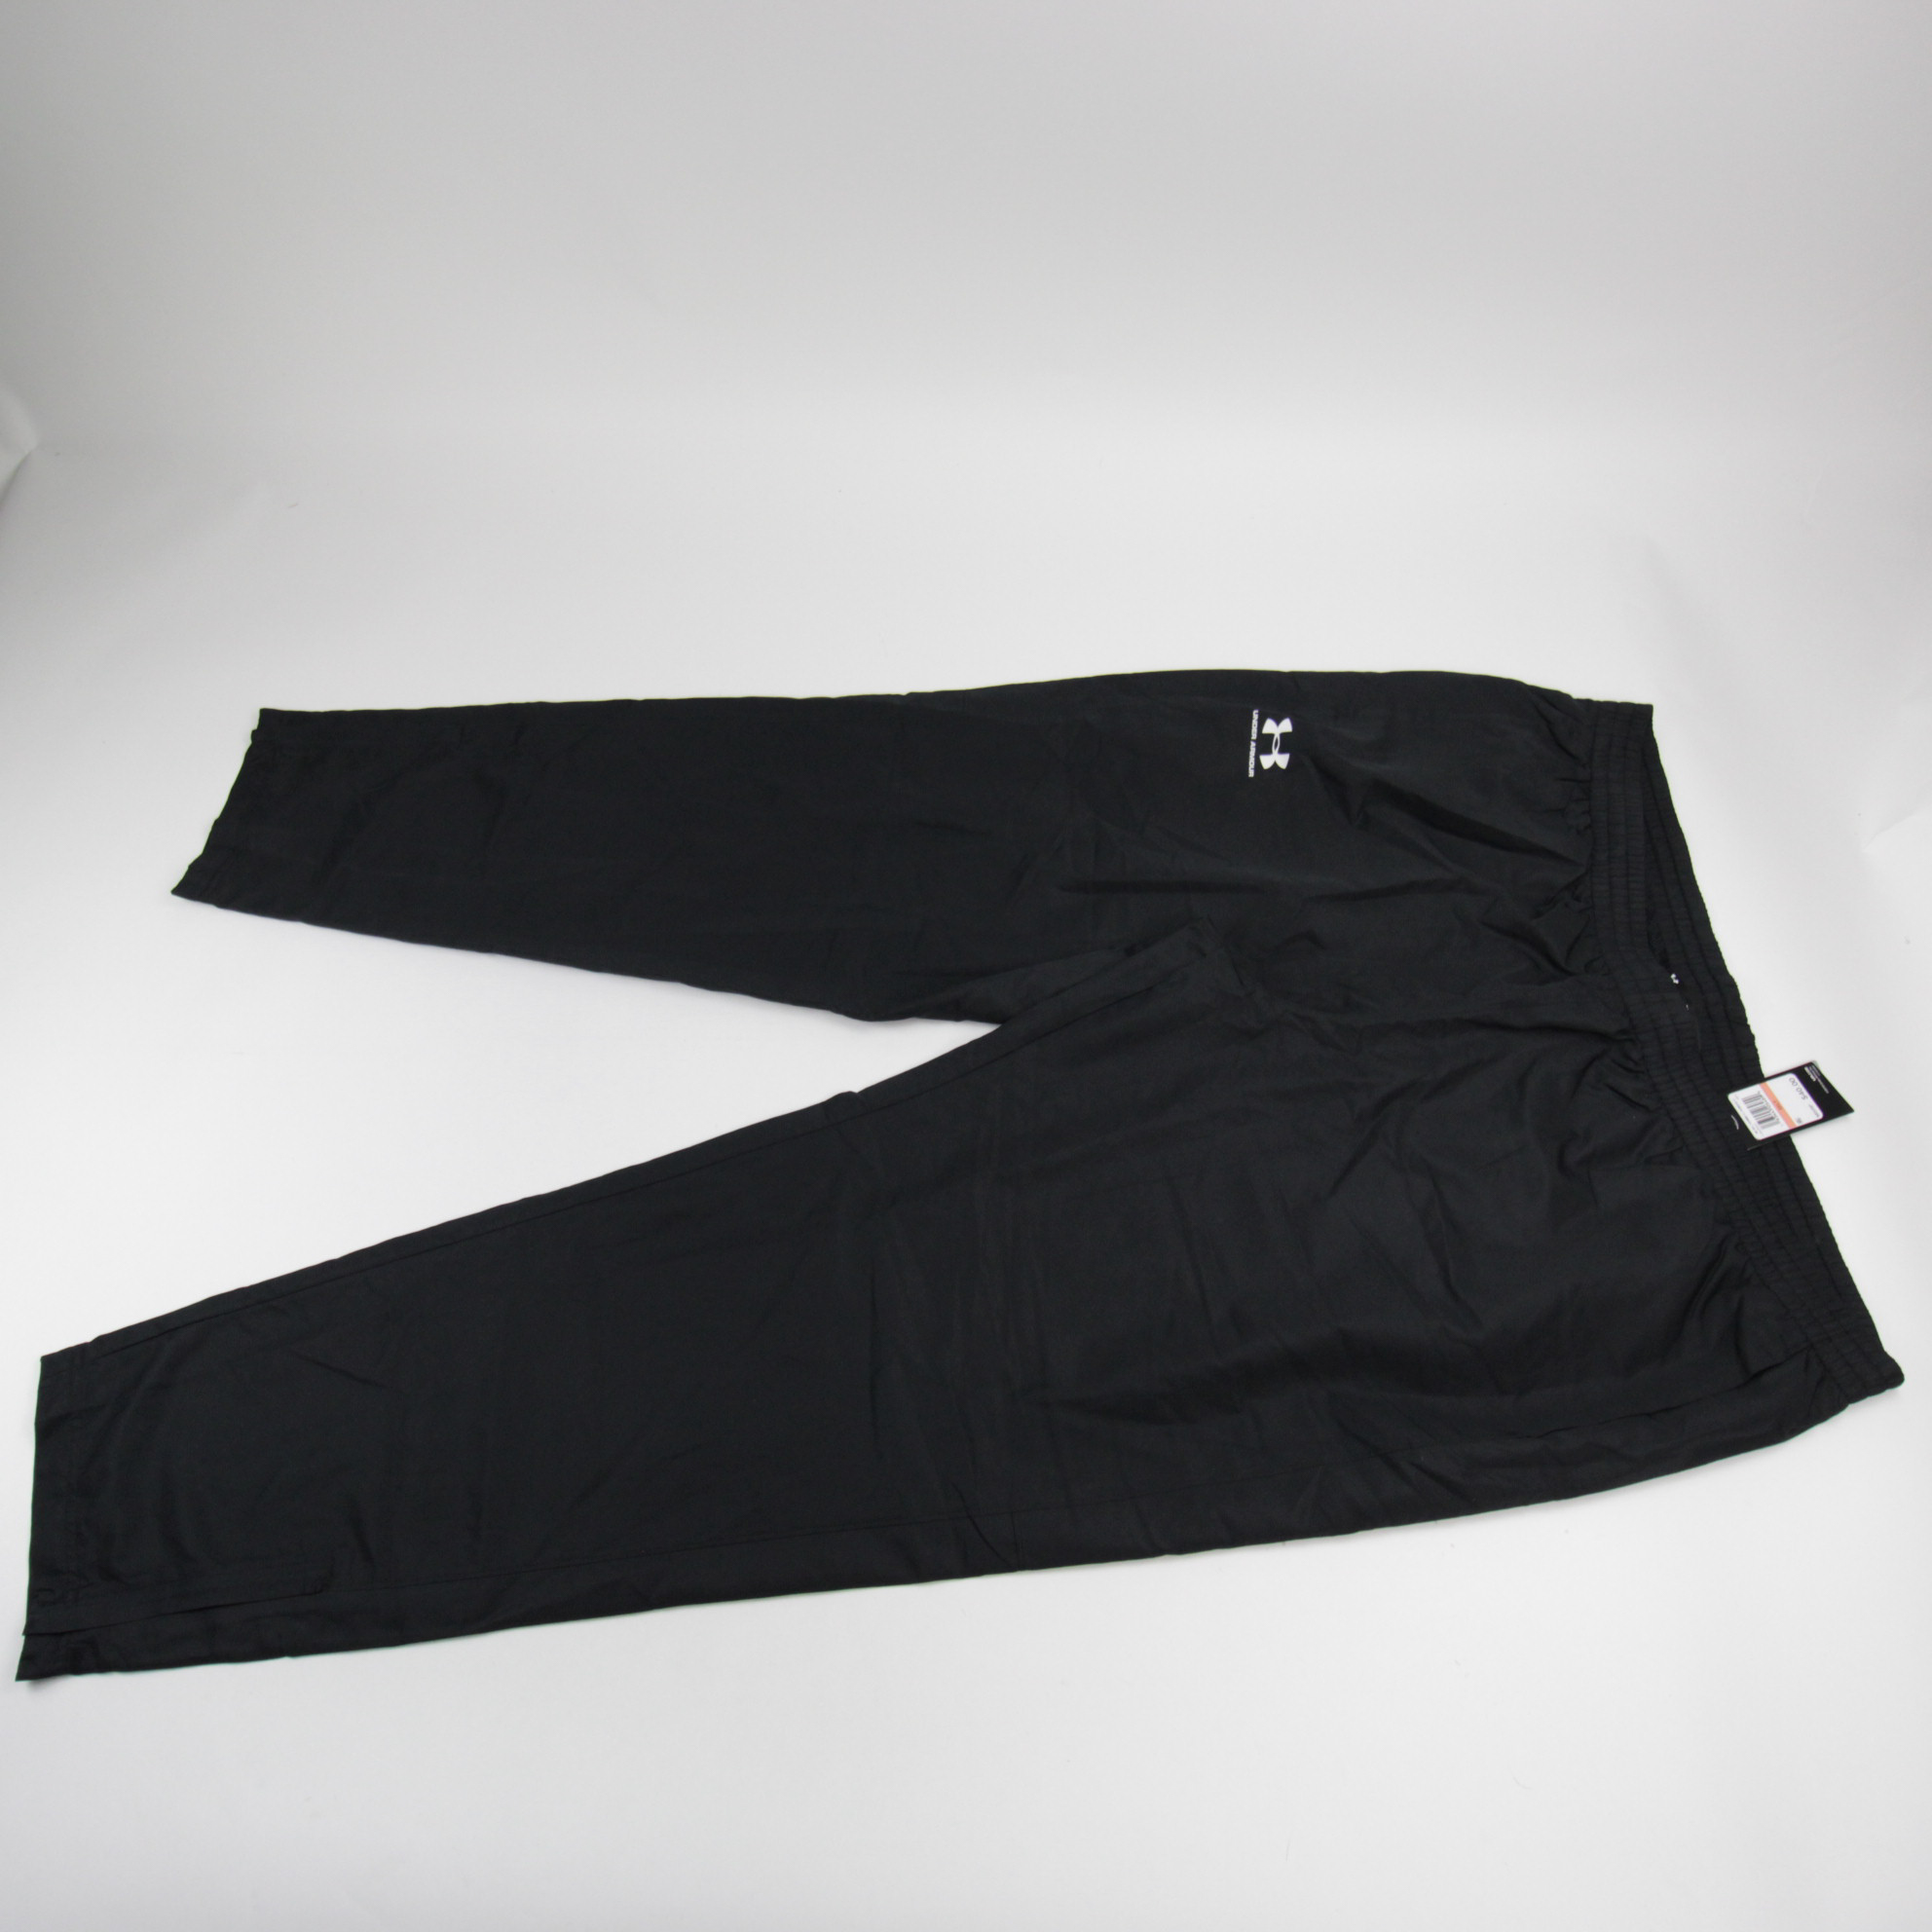 Under Armour Men's Woven Vital Workout Pants Black Size Xx-large